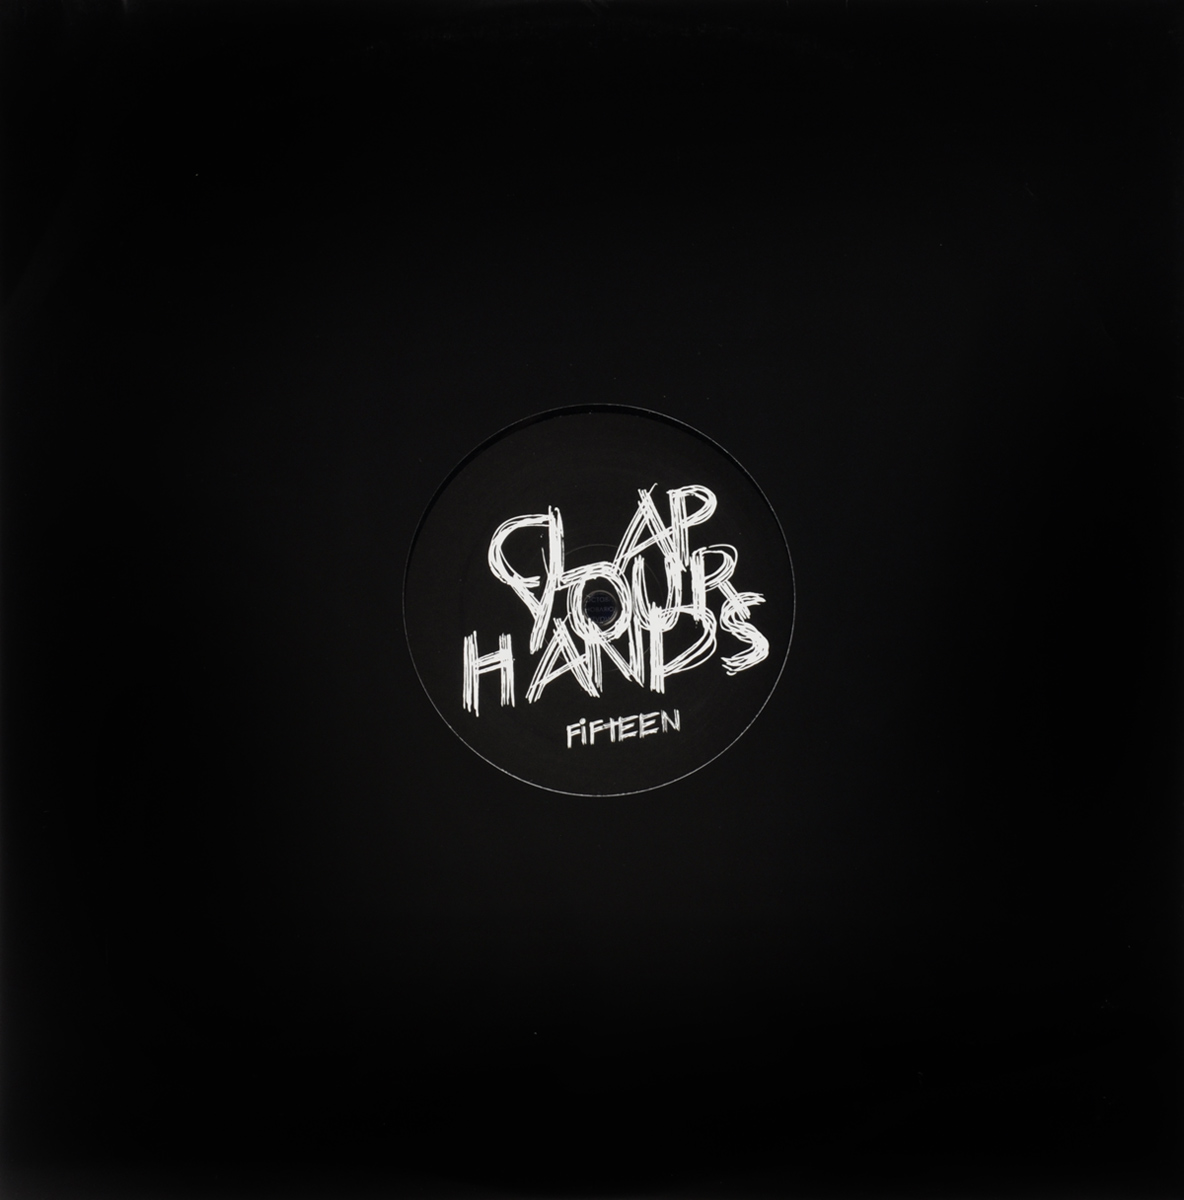 DJ Sneak & Ian Pooley. Clap Your Hands 15. The Cyh Remixes. Vol. 1 (LP)